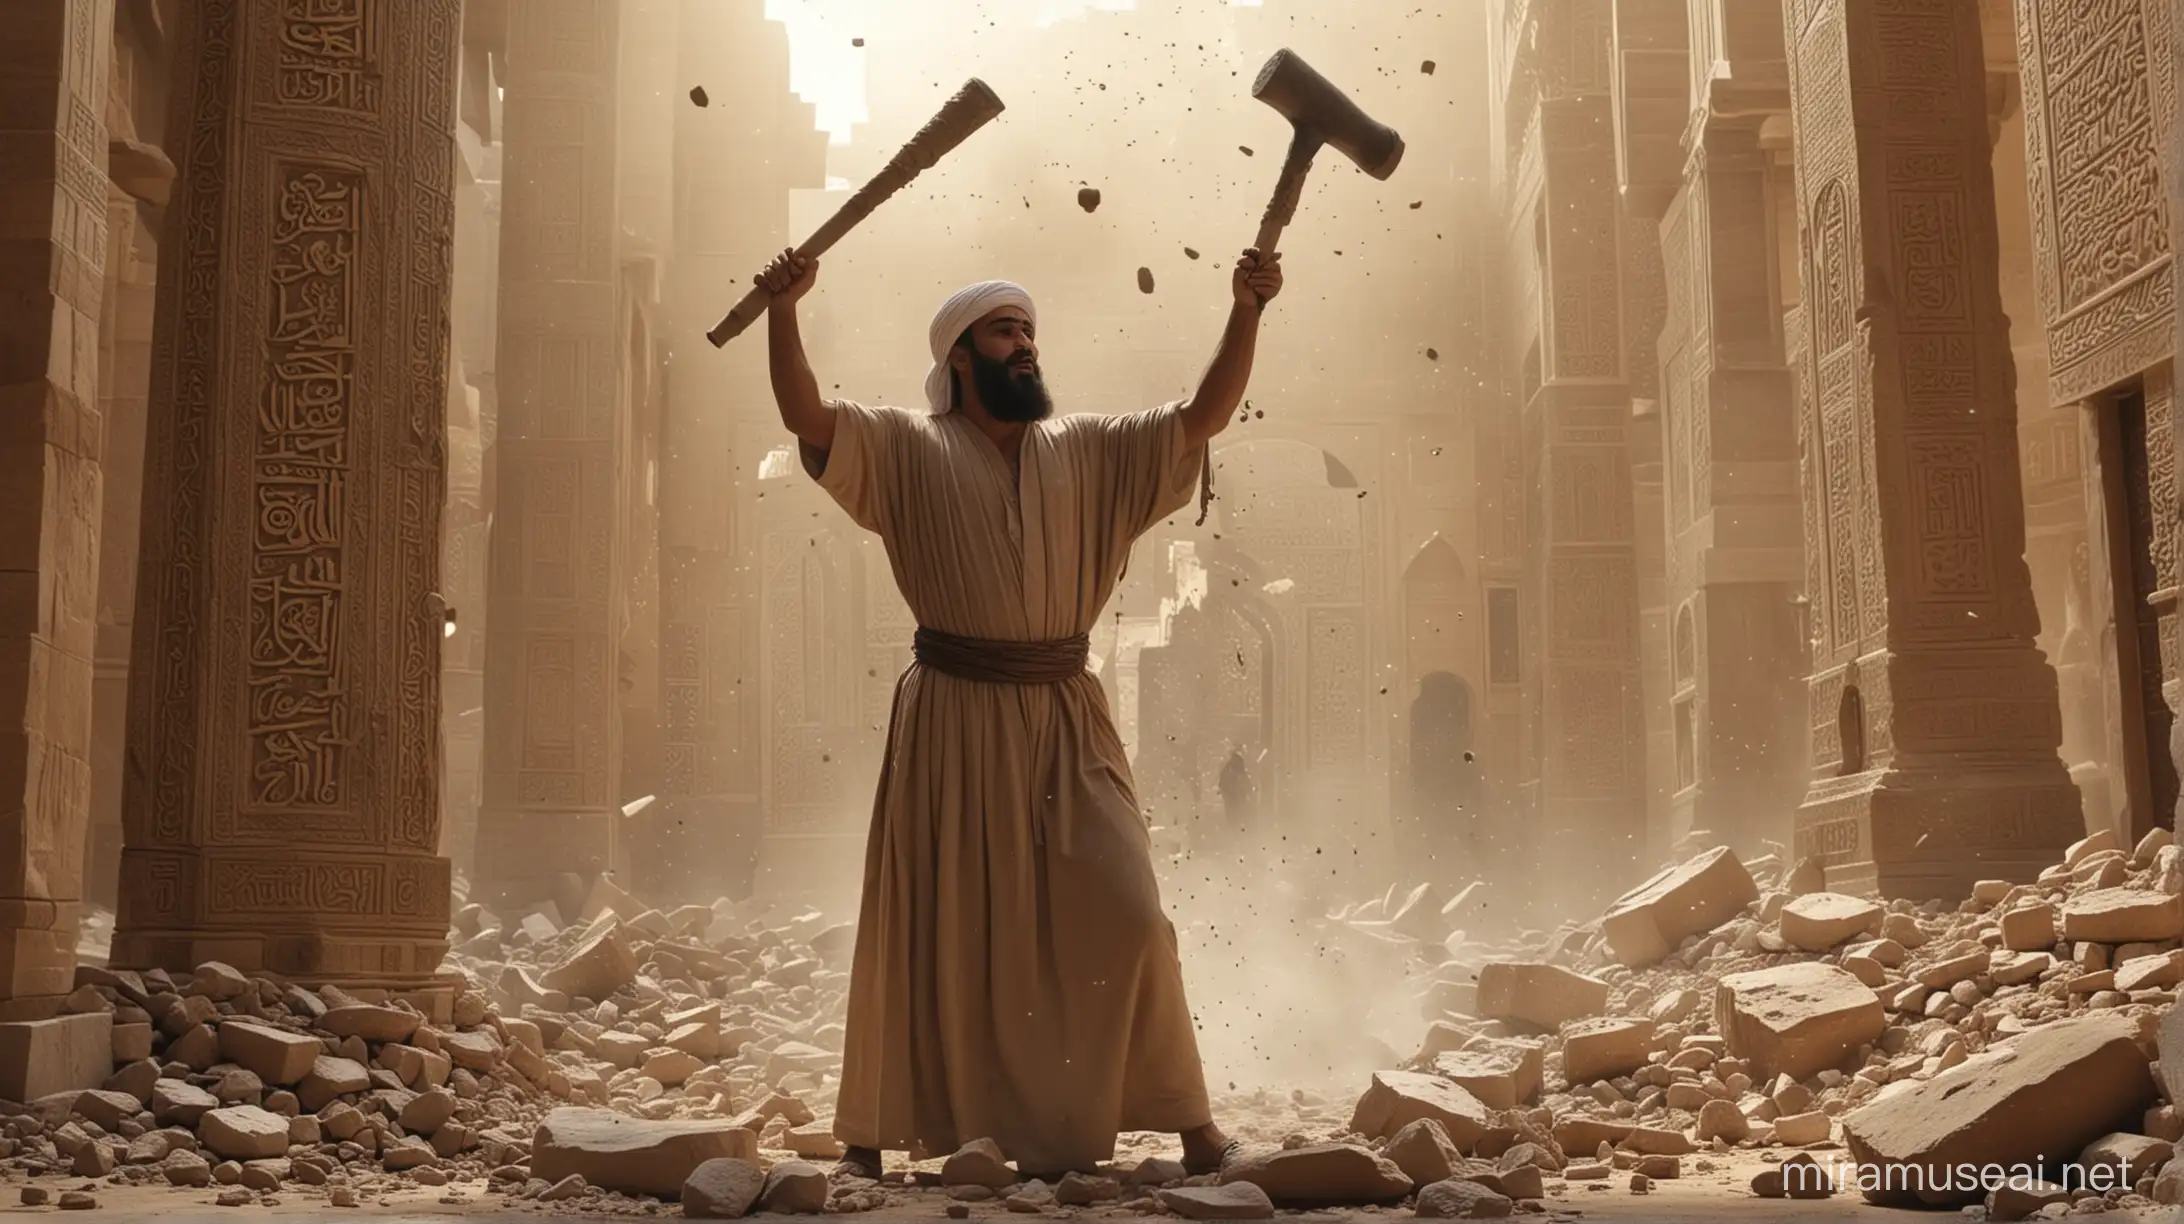 Prophet Ibrahim Smashes Idols Dramatic Temple Destruction Scene